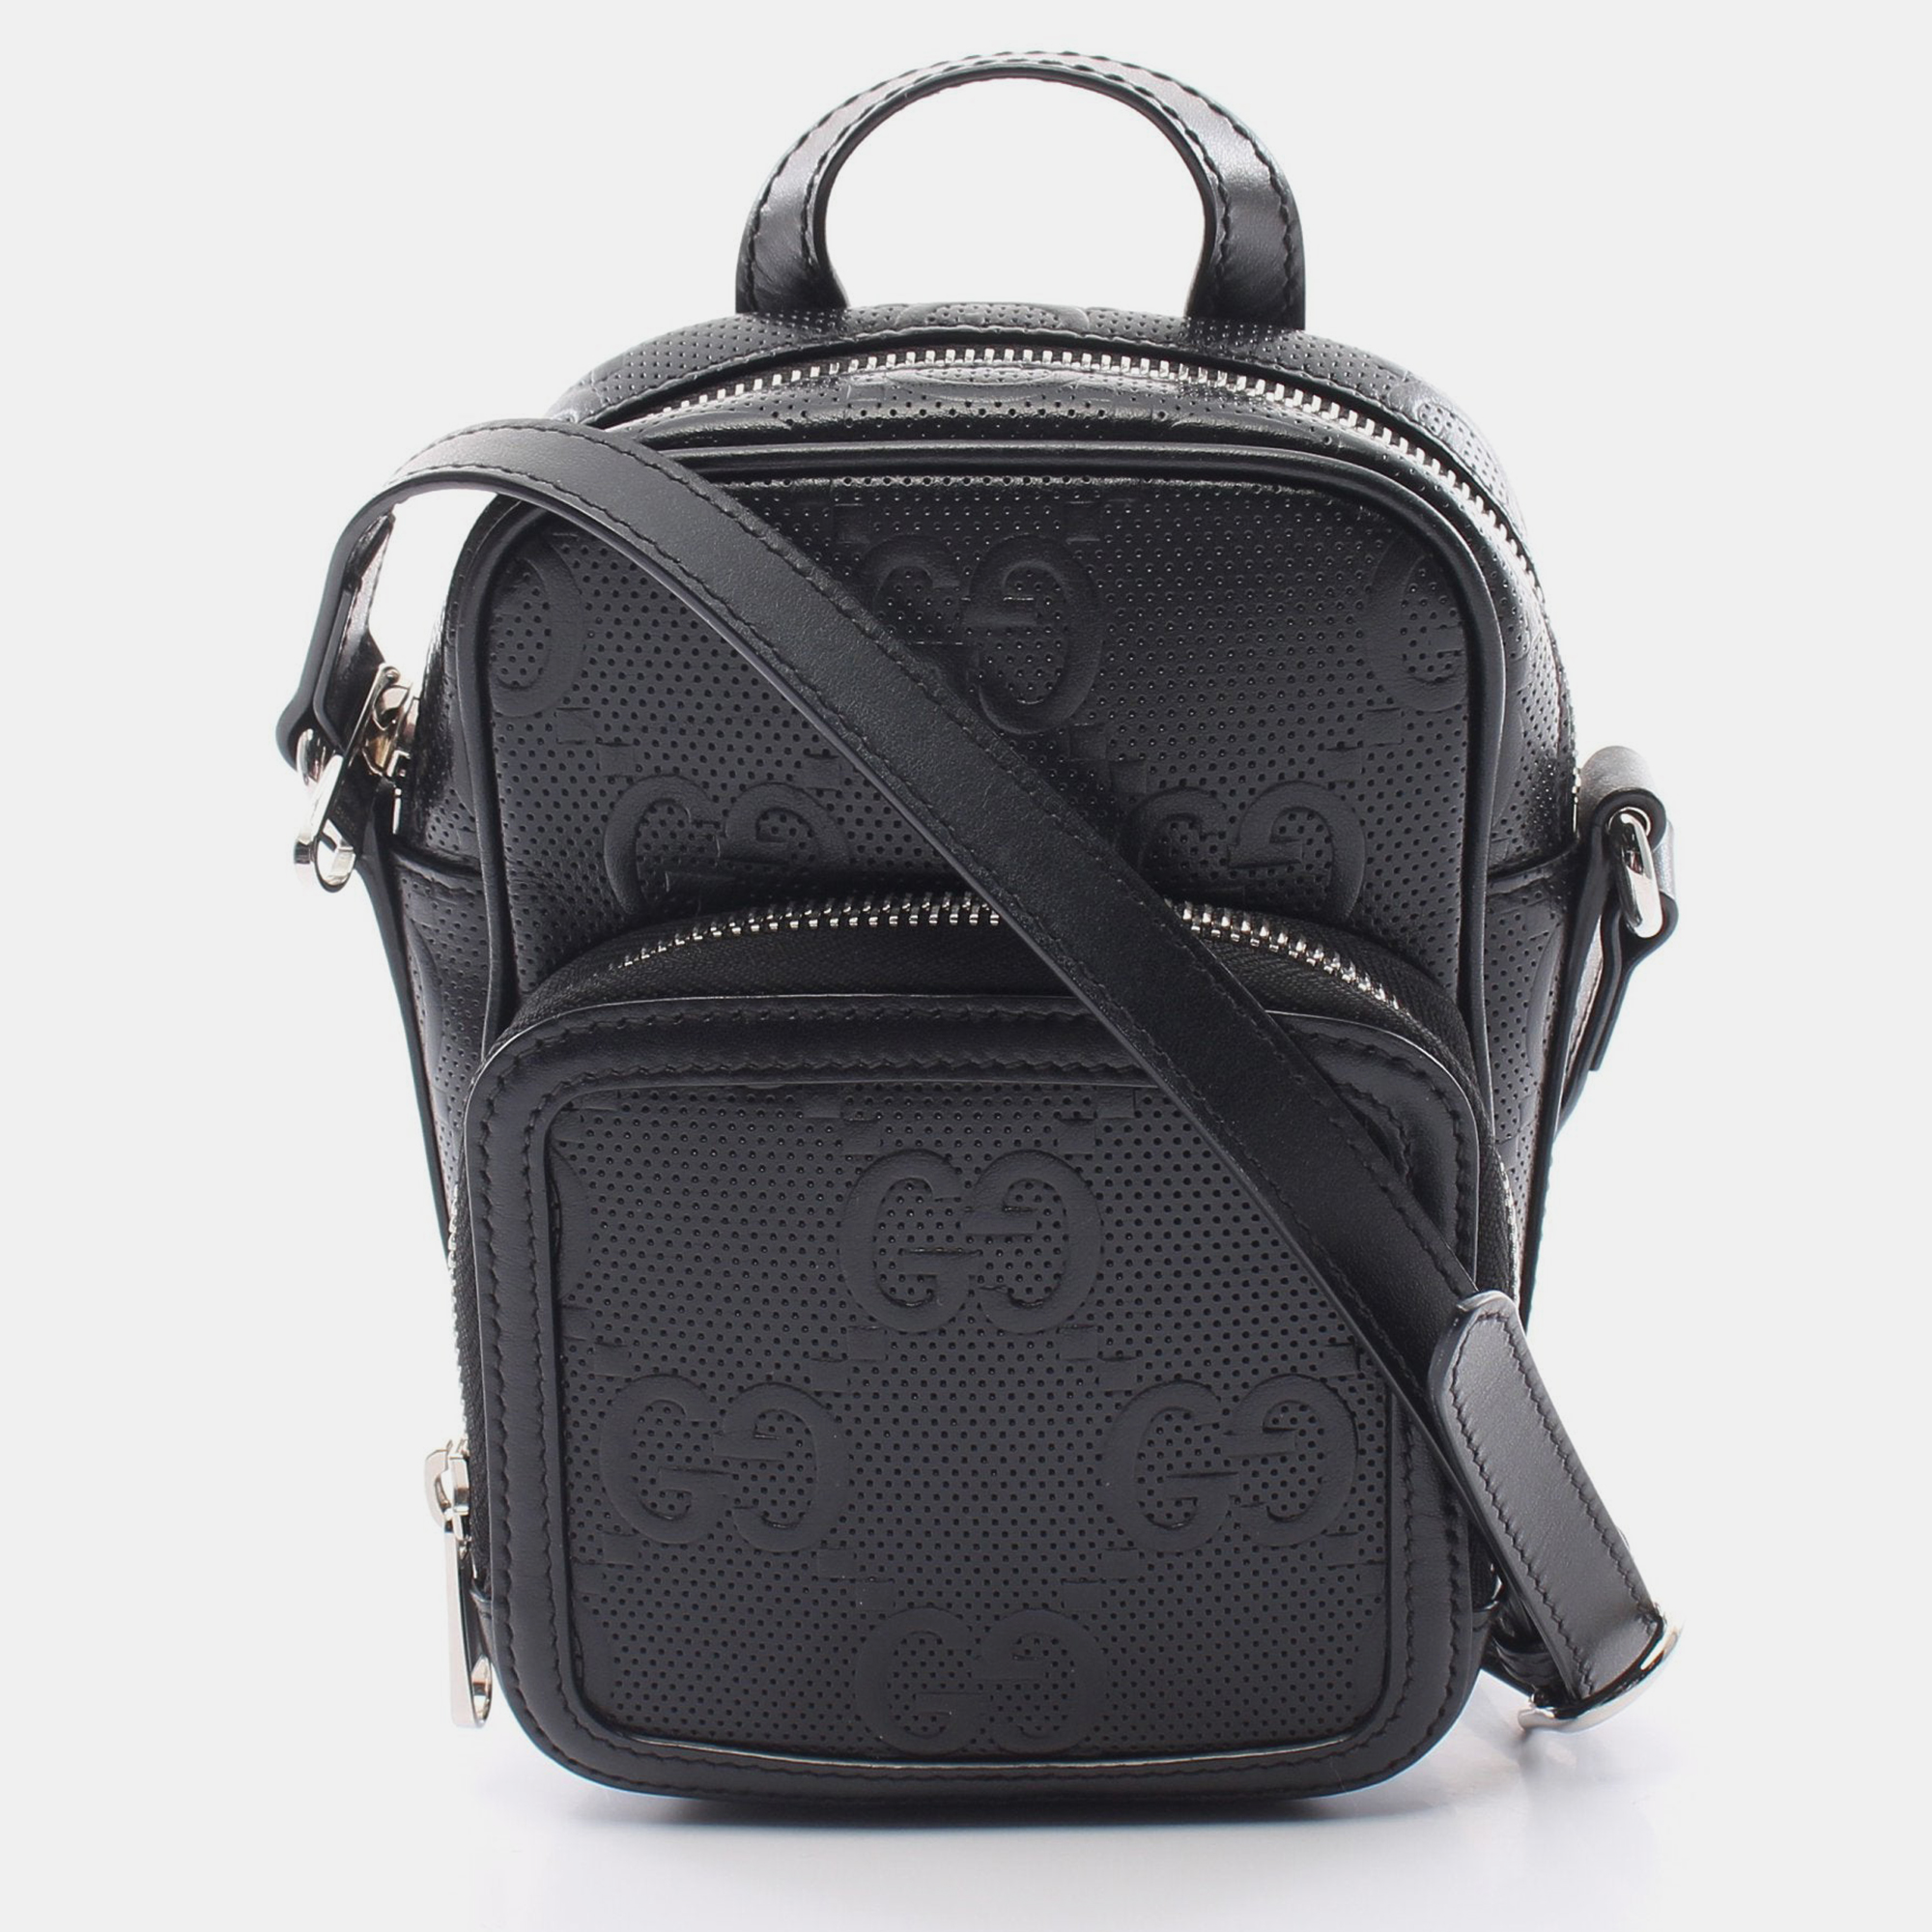 Gucci gg embossed mini bag shoulder bag leather black 2way